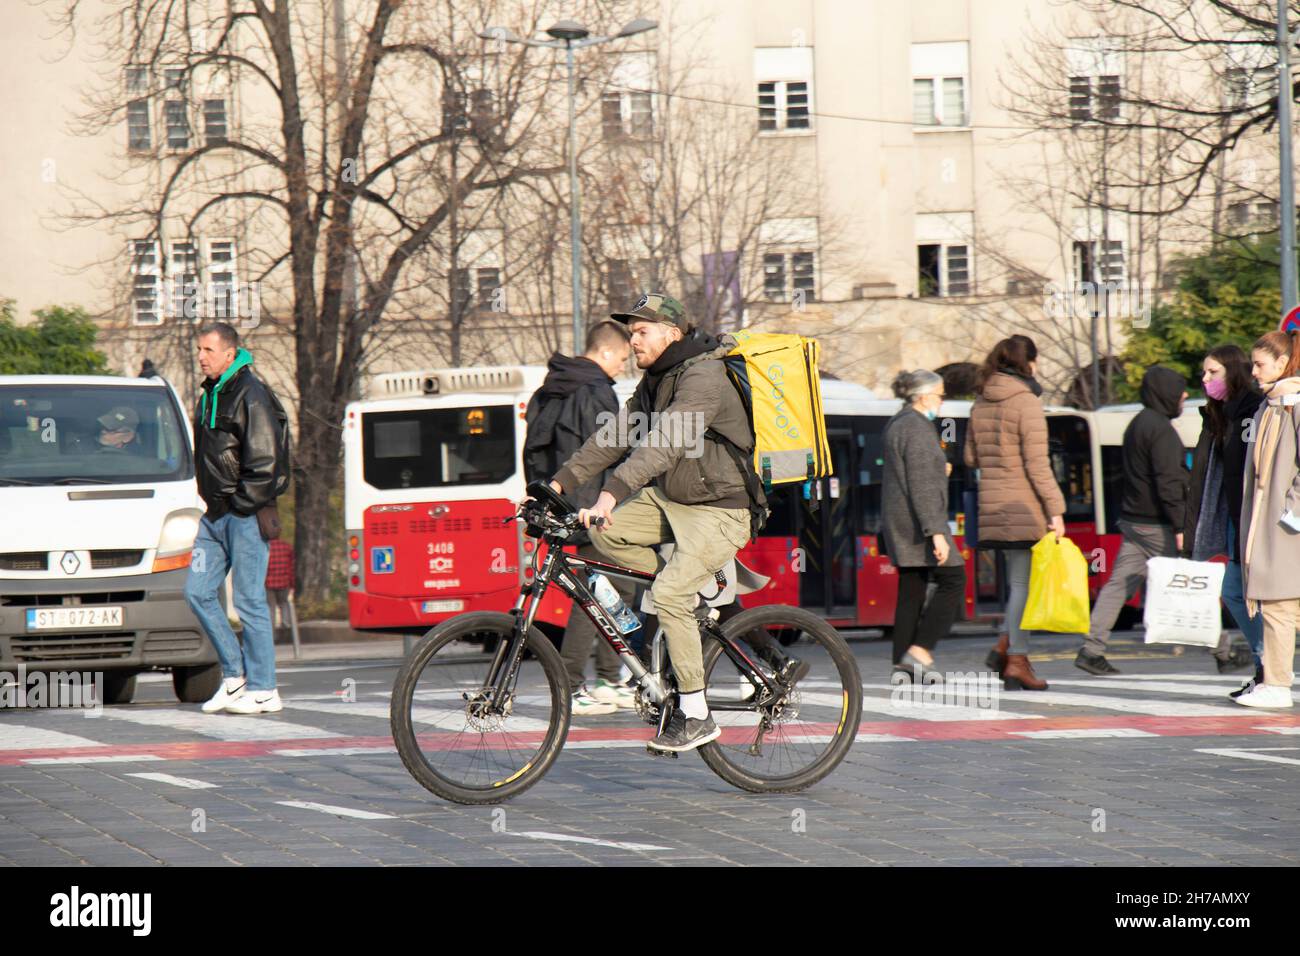 Belgrado, Serbia - 17 de noviembre de 2021: Persona que trabaja para el servicio de entrega de alimentos de la ciudad de Glovo en bicicleta mientras cruza la ajetreada calle de la ciudad Foto de stock